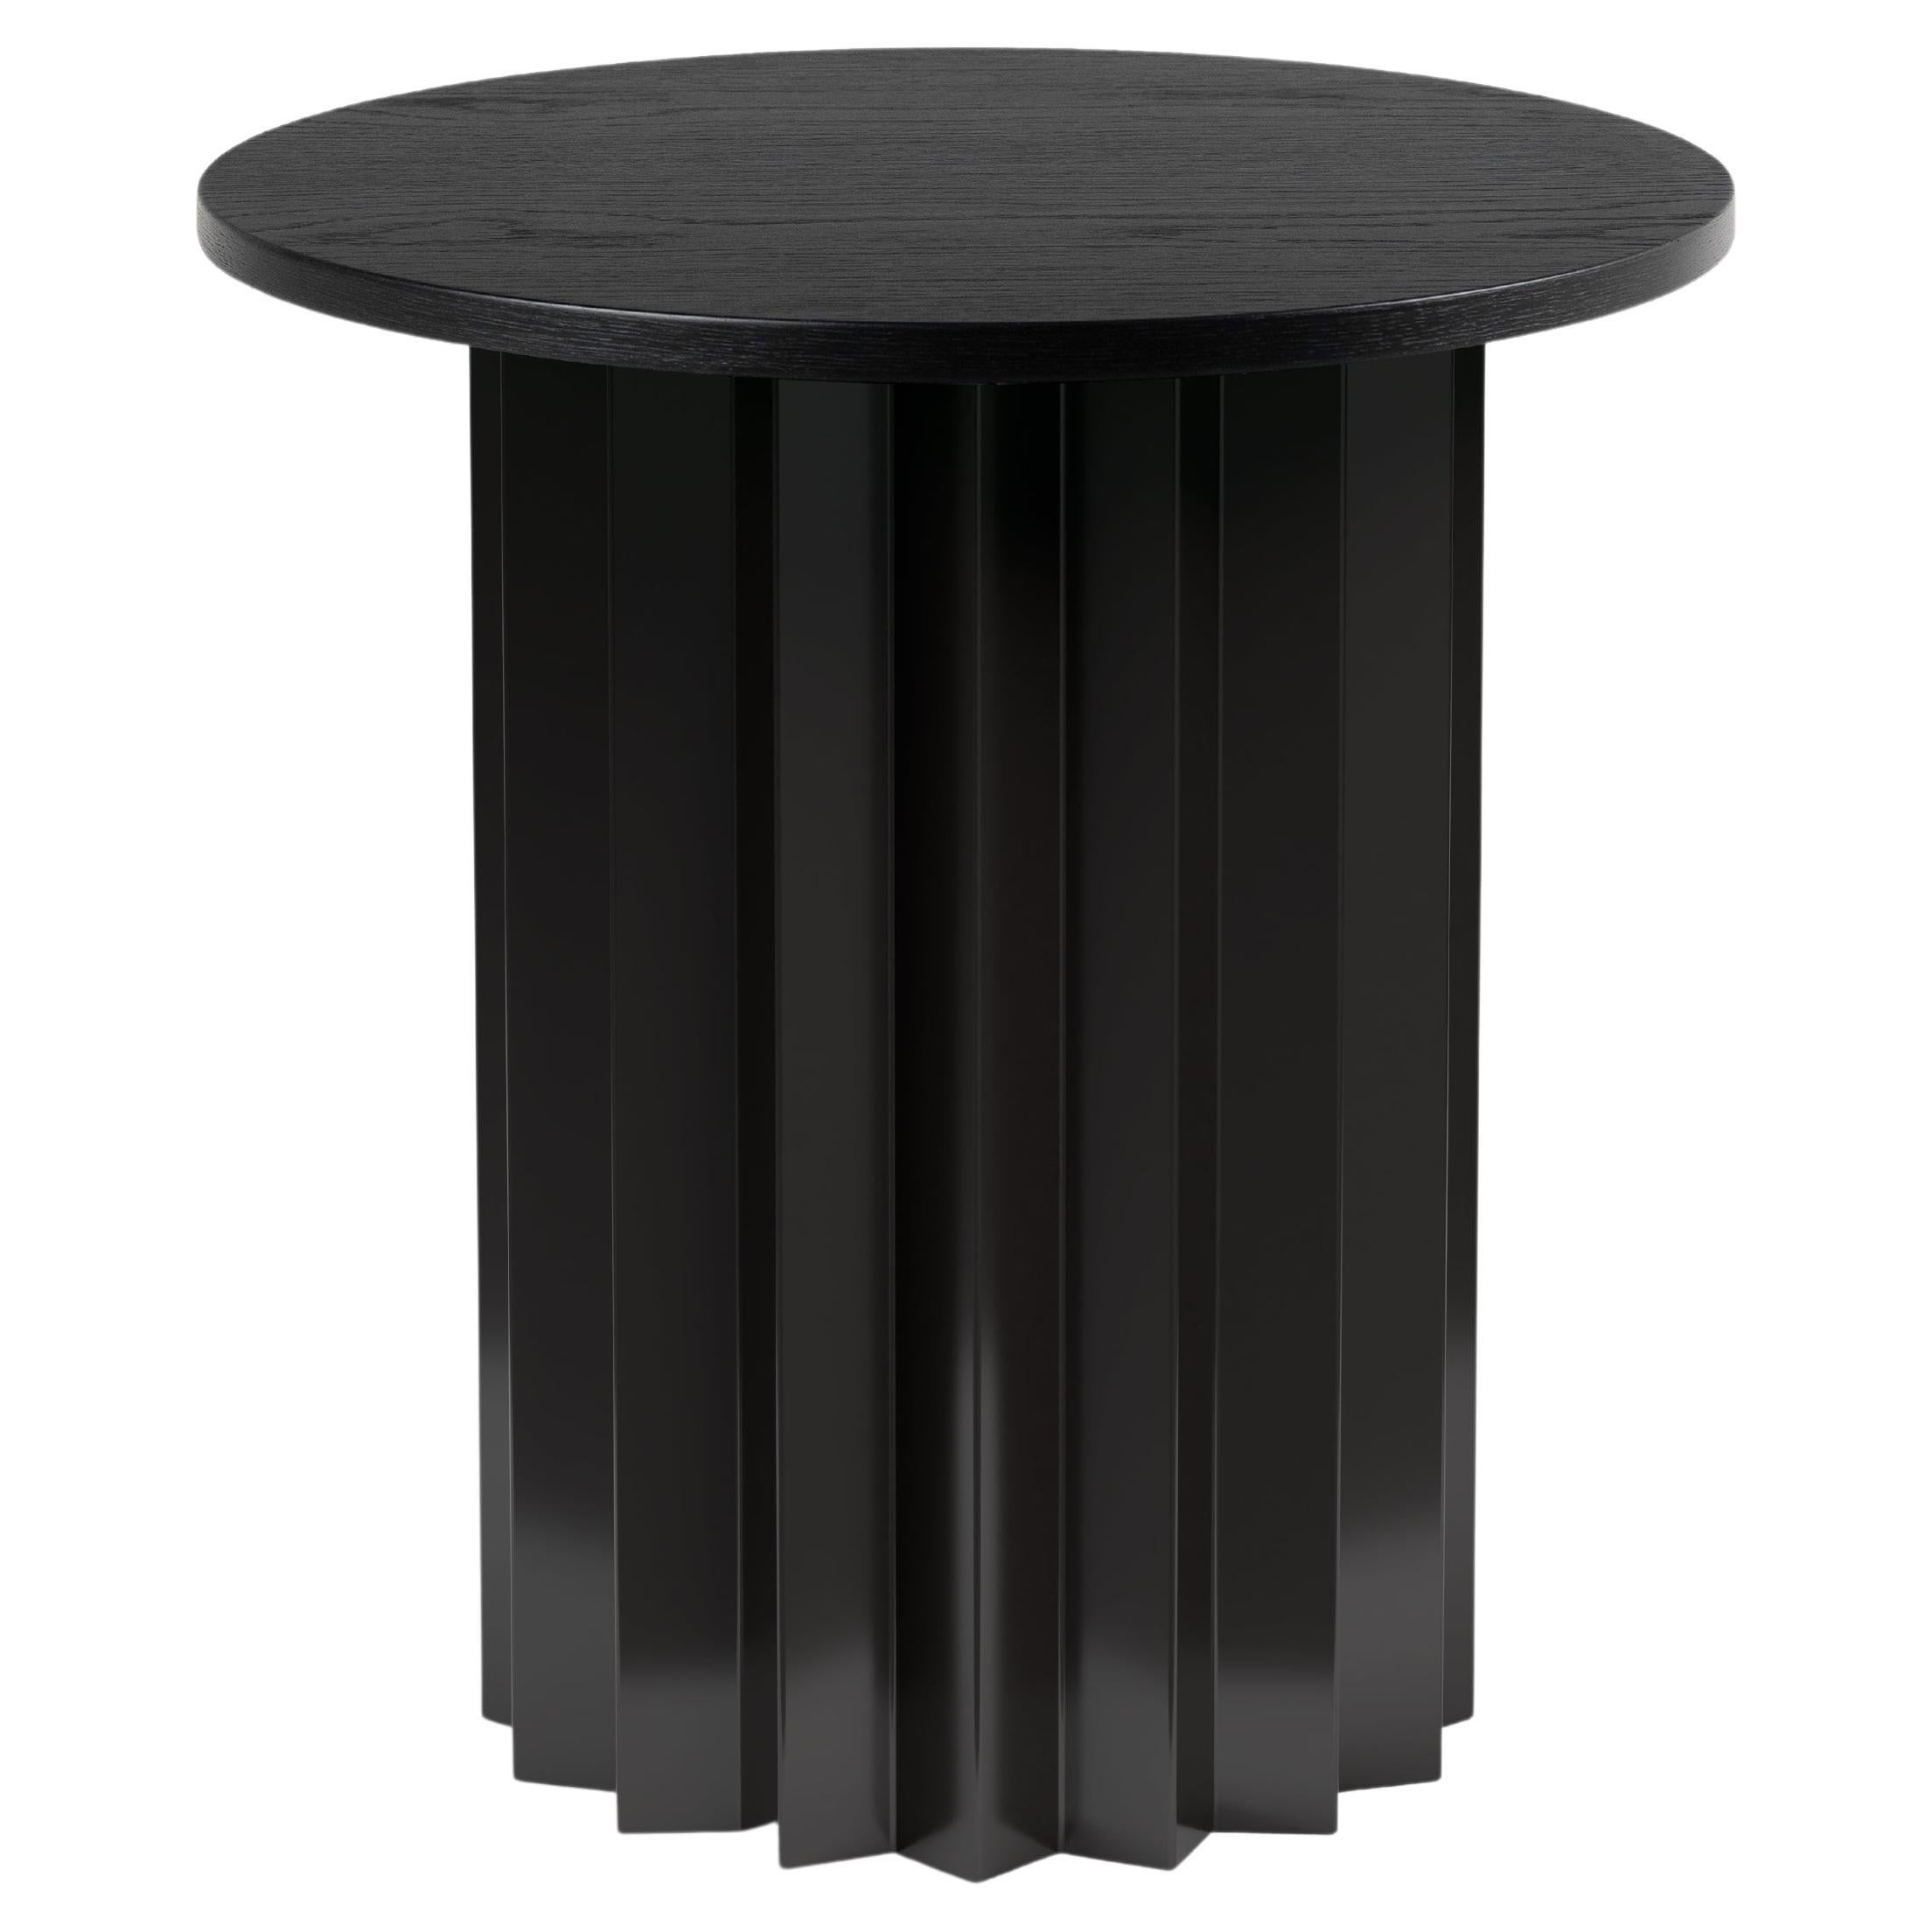 Table d'appoint haute moderne contemporaine, volume, base en métal et plateau en bois teinté